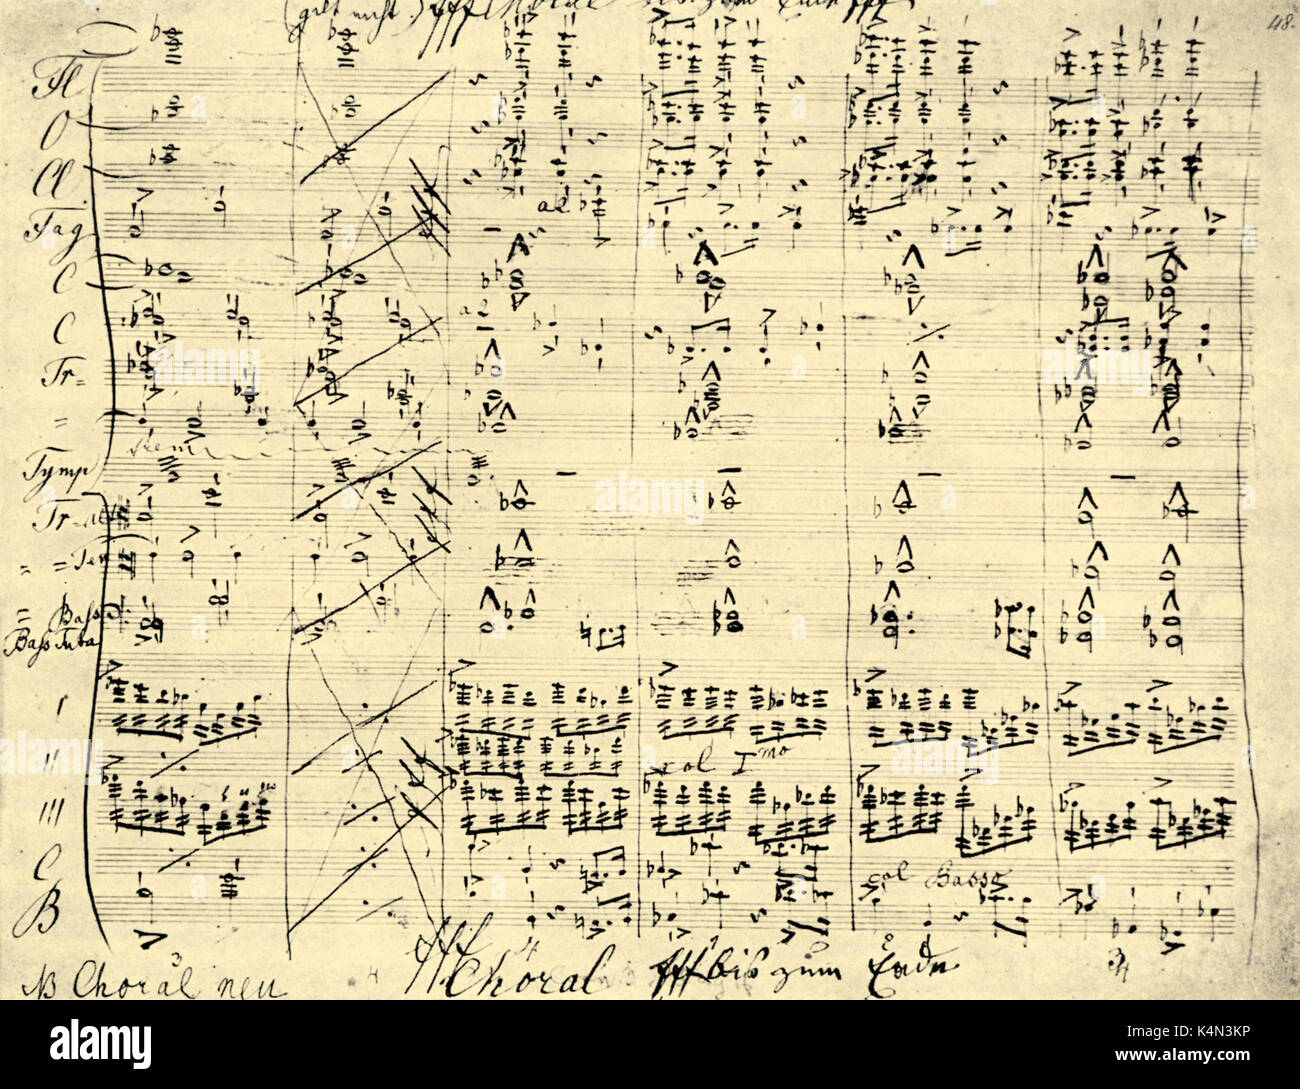 BRUCKNER, Anton - quinta sinfonia punteggio manoscritte che mostra l'ultima voce corale. Il compositore austriaco & organista, 1824-1896 Foto Stock